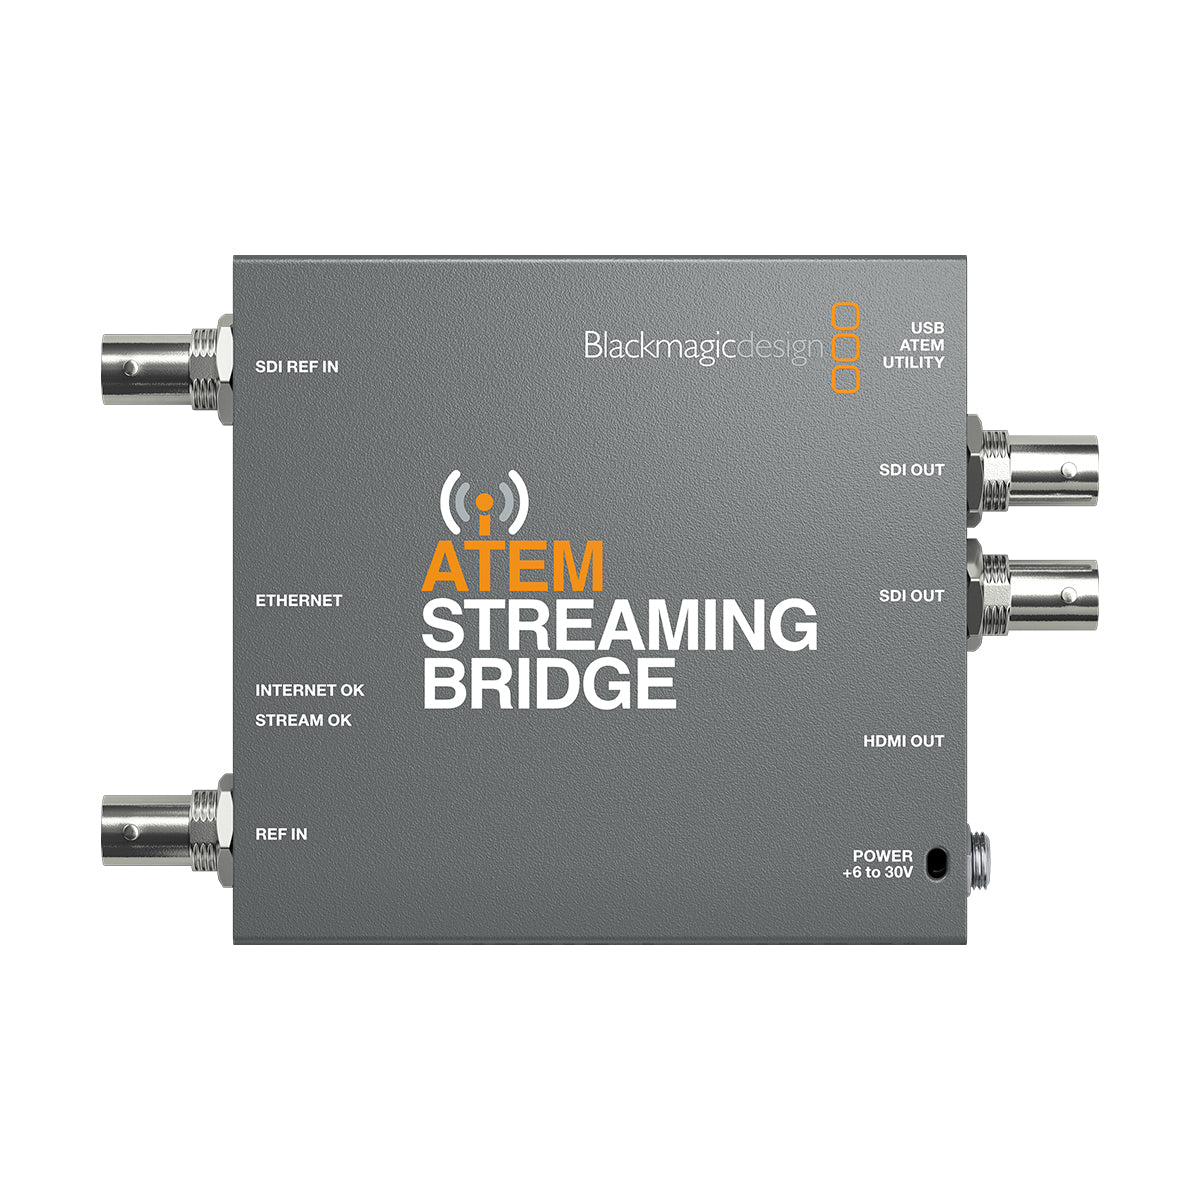 BlackMagic Design ATEM Streaming Bridge